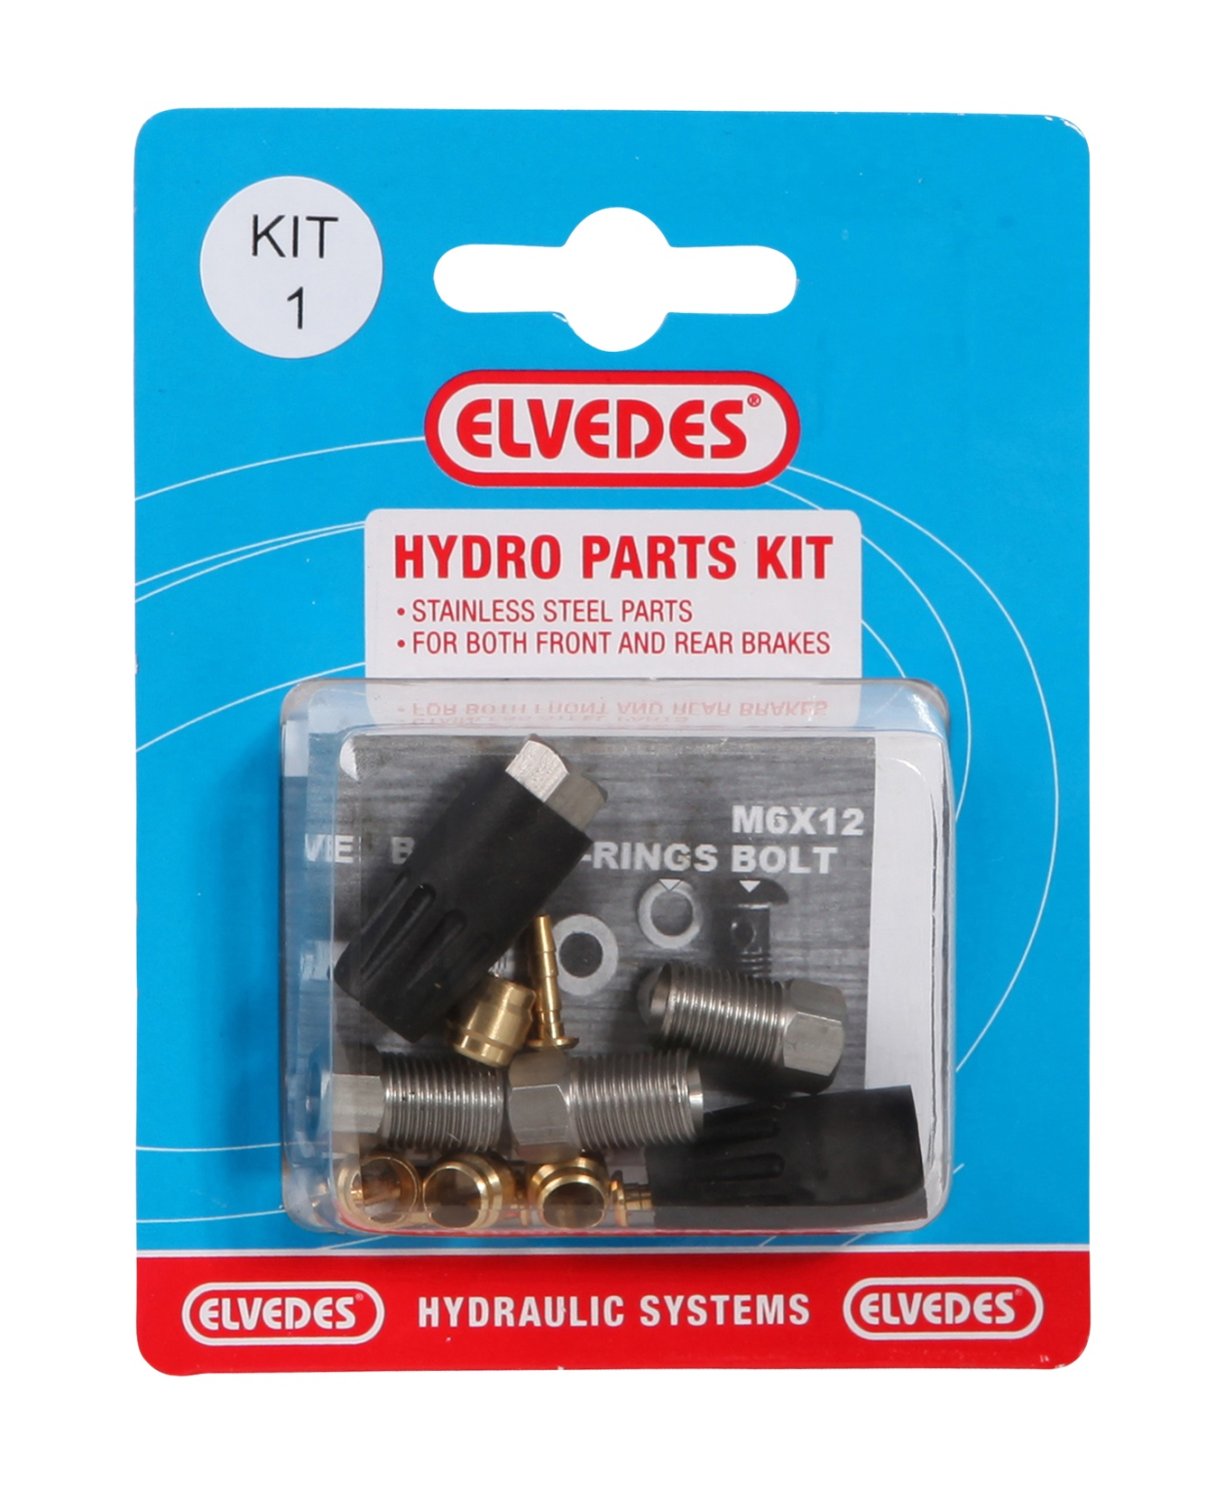 Велосипедный набор для гидролинии ELVEDES Kit 1 (М8 + М8), для переднего и заднего тормозов , для Shimano, 2011012 шприц велосипедный для заправки гидролинии d o t маслом elvedes без наконечника 2018041